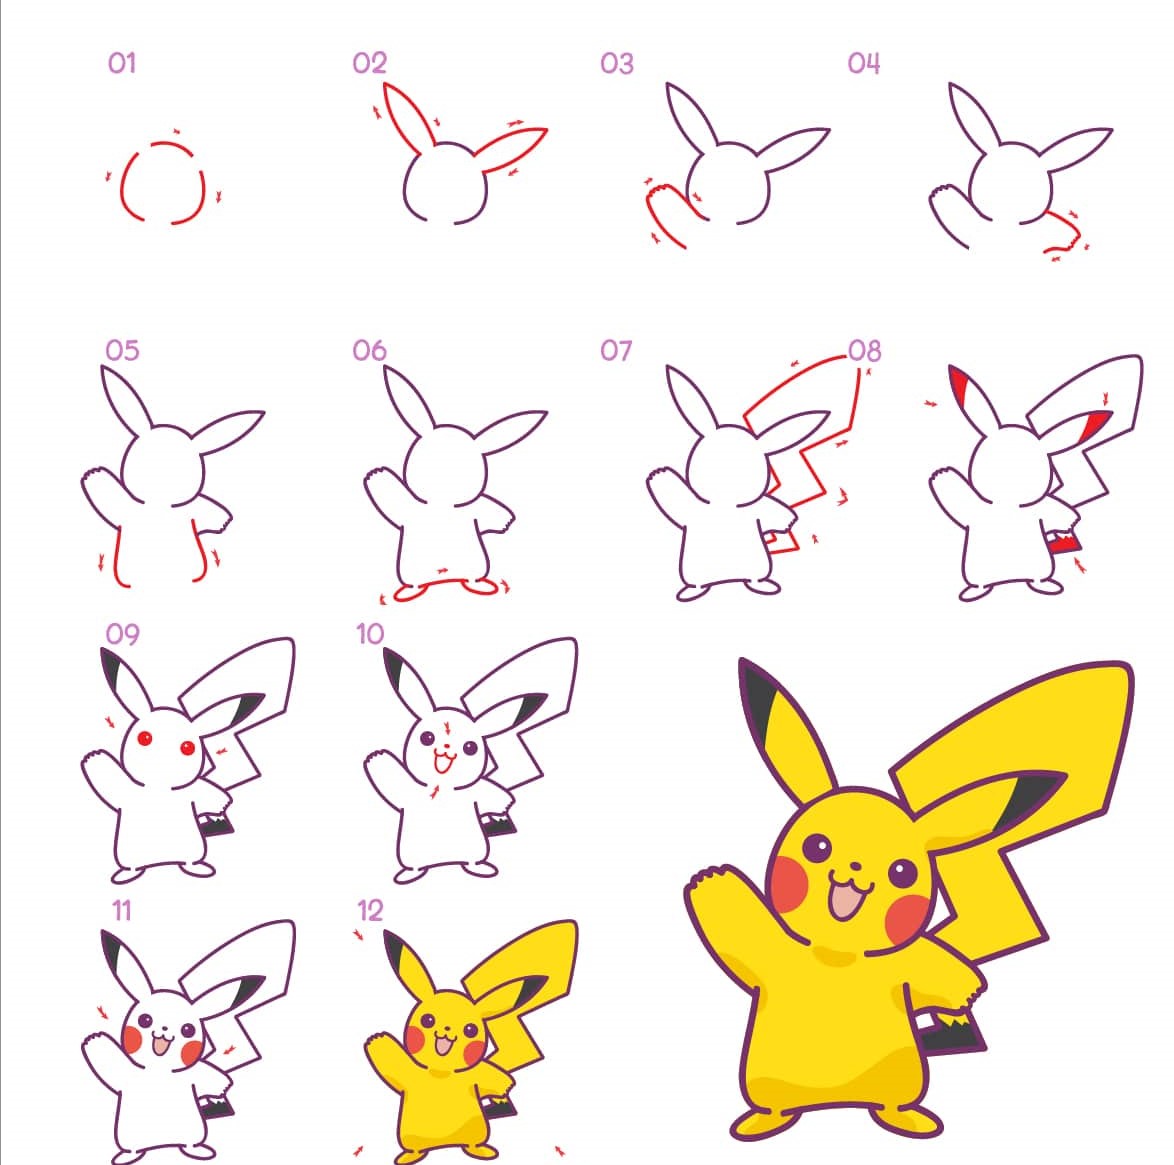 Hướng dẫn cách để vẽ Pikachu cho người mới bắt đầu